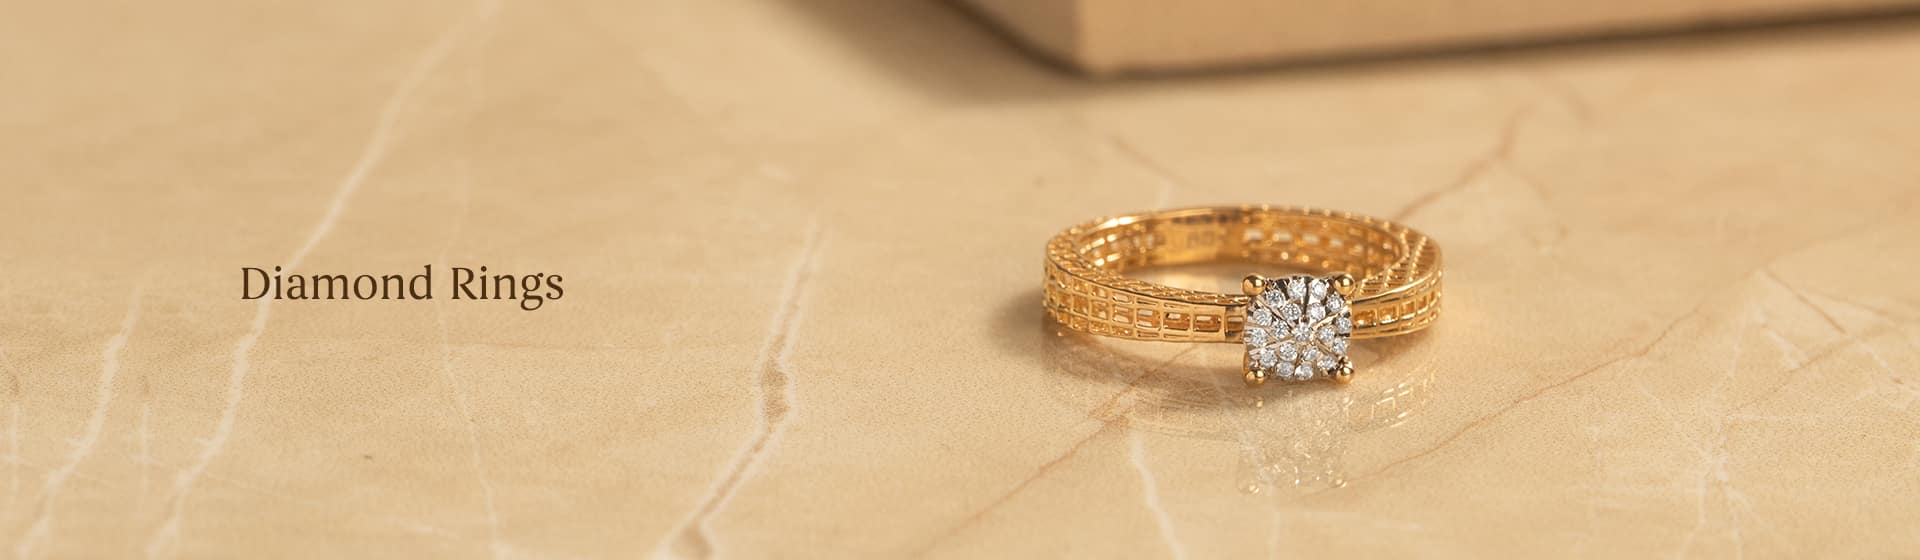 Latest engagement Diamond Ring designs for women & men